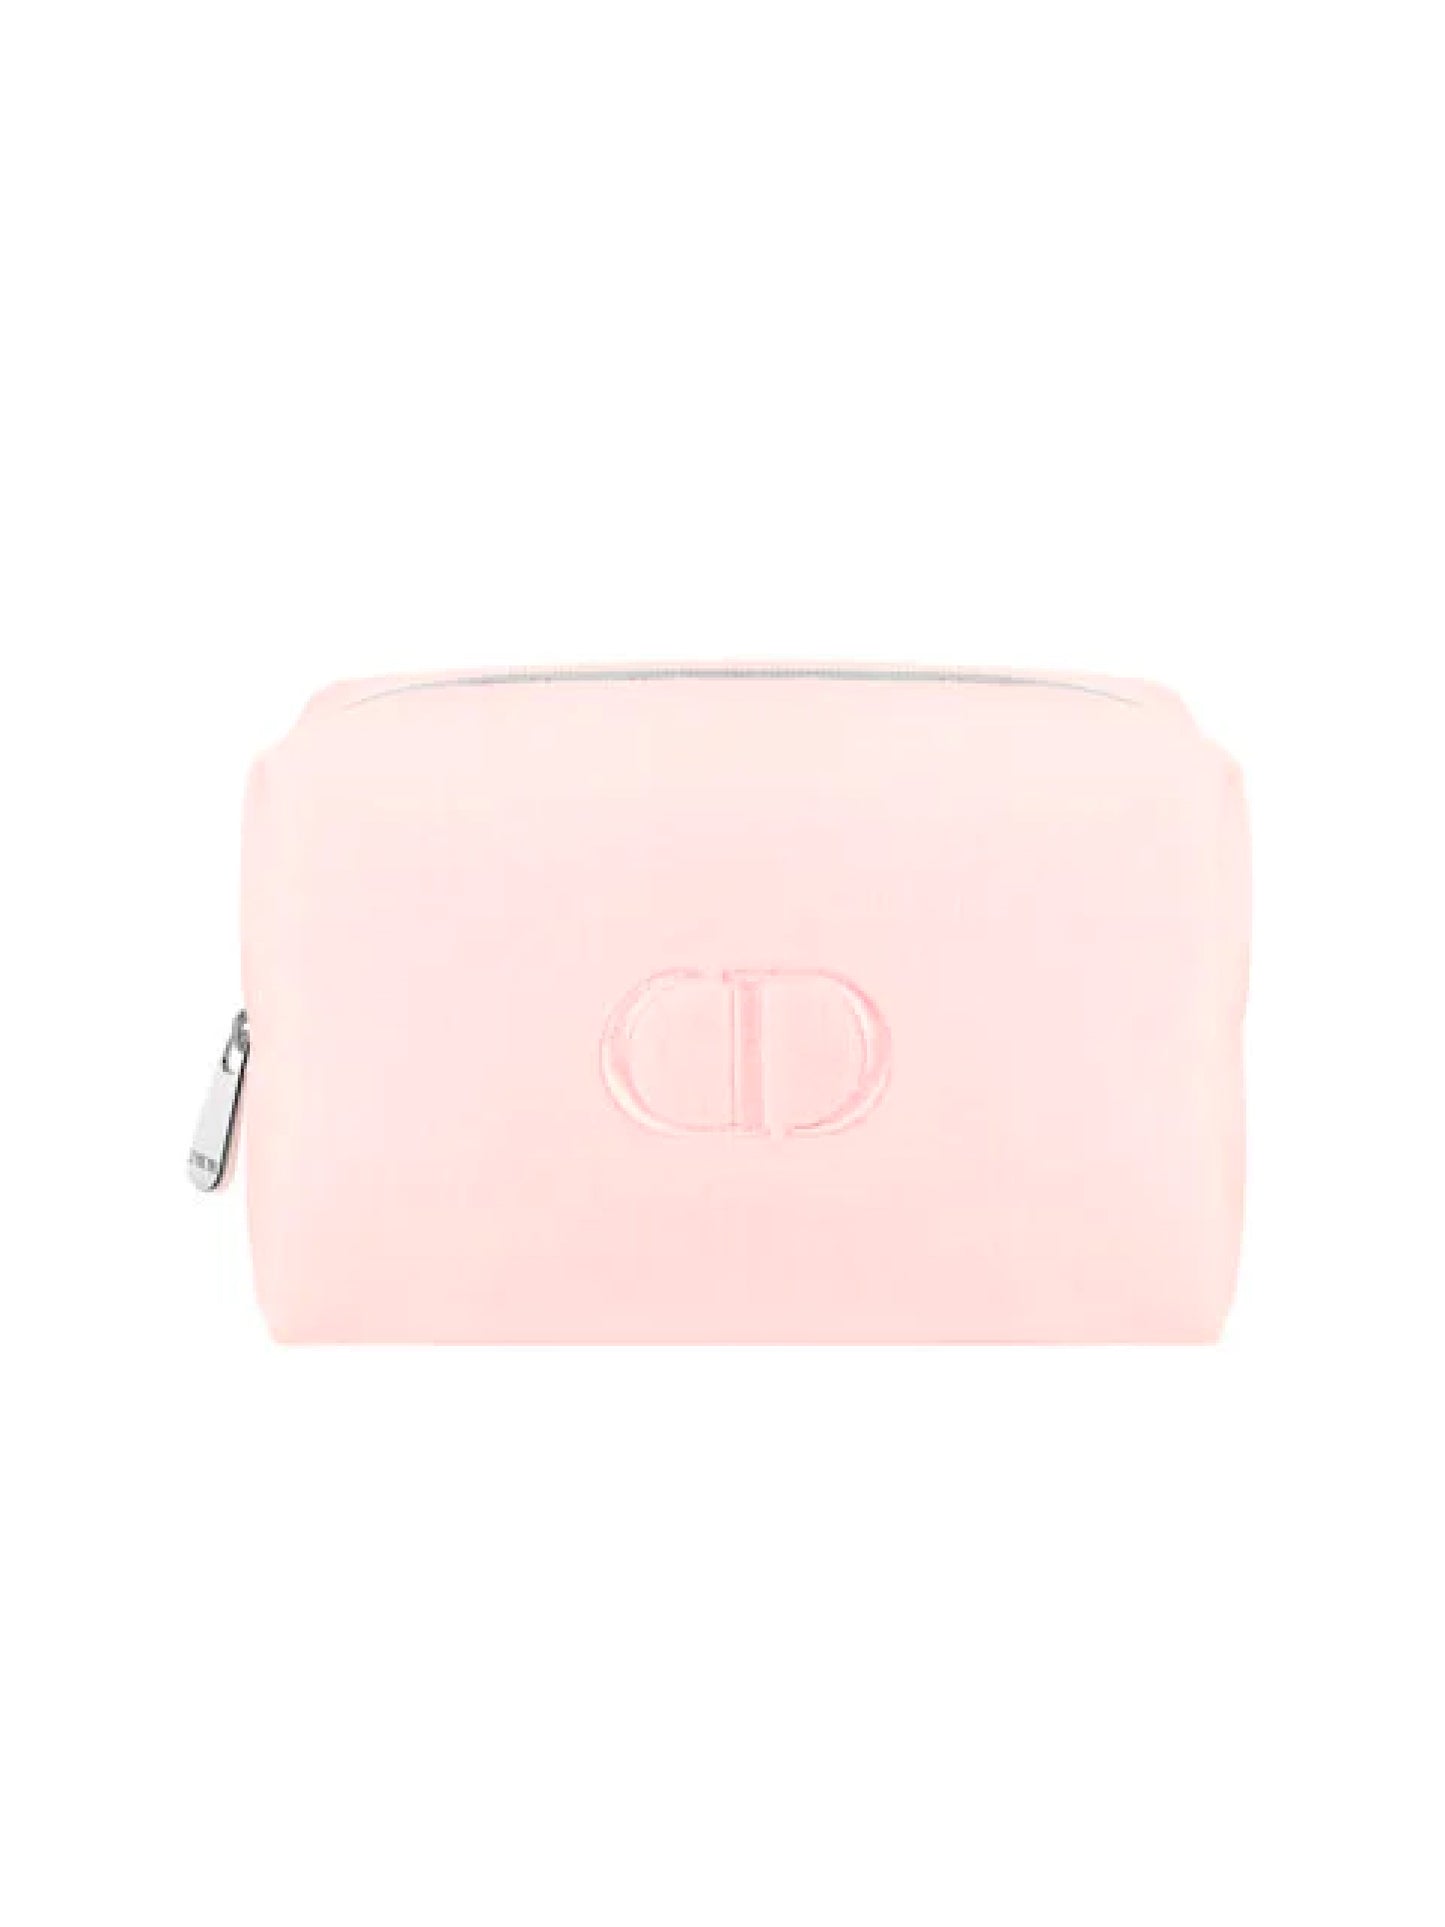 Dior CD logo Makeup Bag -  Pink